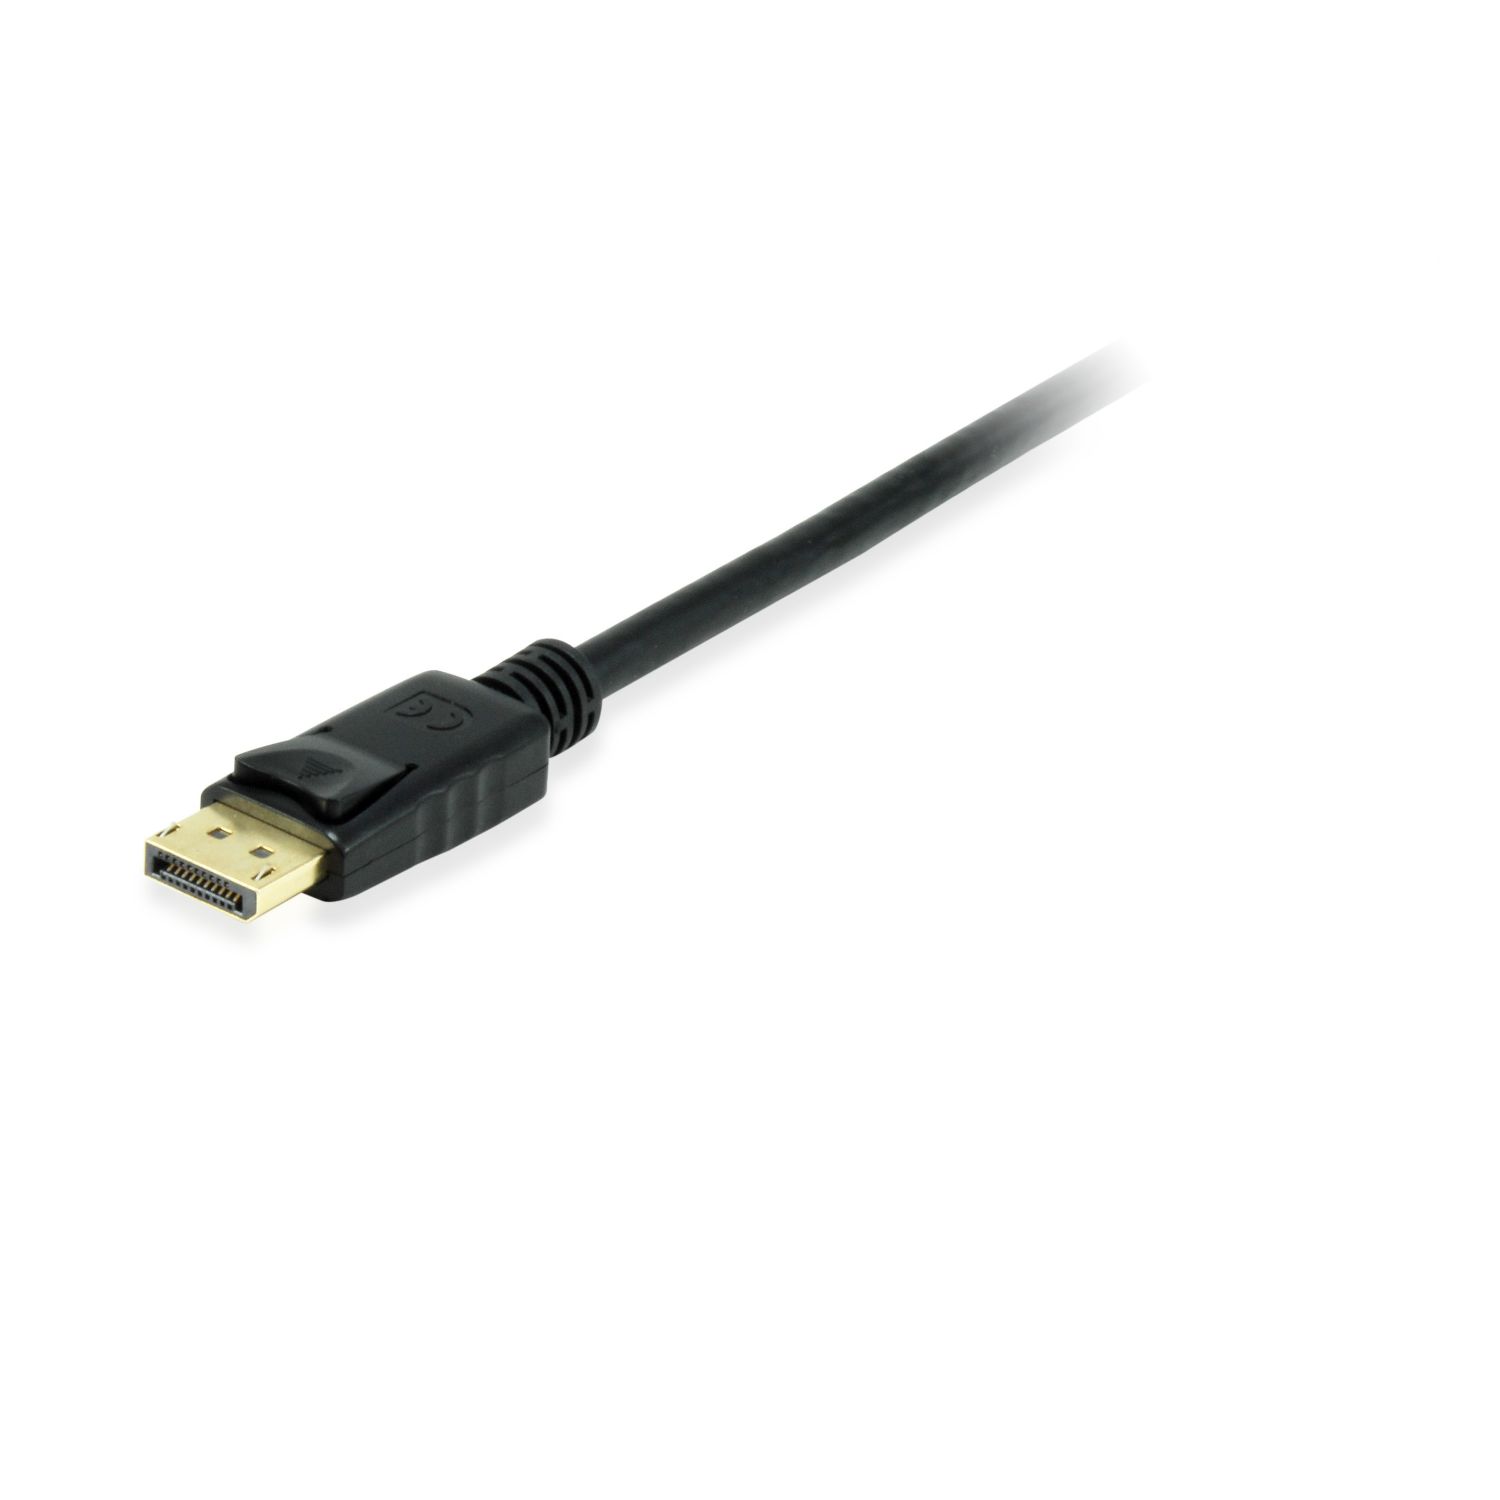 EQ119256 - Cable EQUIP DP/M a DP/M 10m Negro (EQ119256)